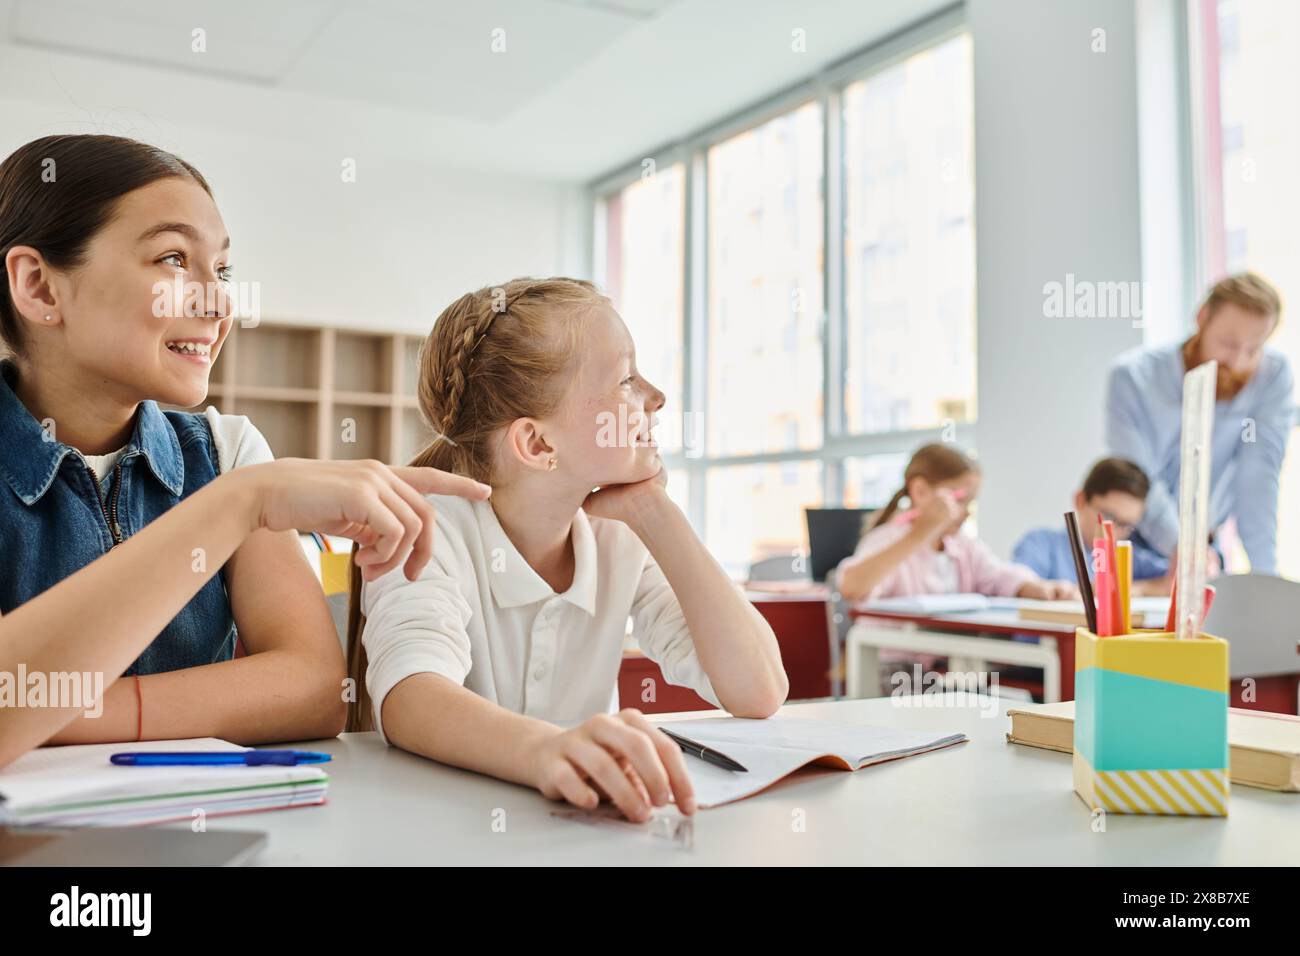 Zwei Mädchen, umgeben von Büchern und farbenfrohen Schulmaterialien, nehmen aktiv an einer Unterrichtsdiskussion Teil Stockfoto